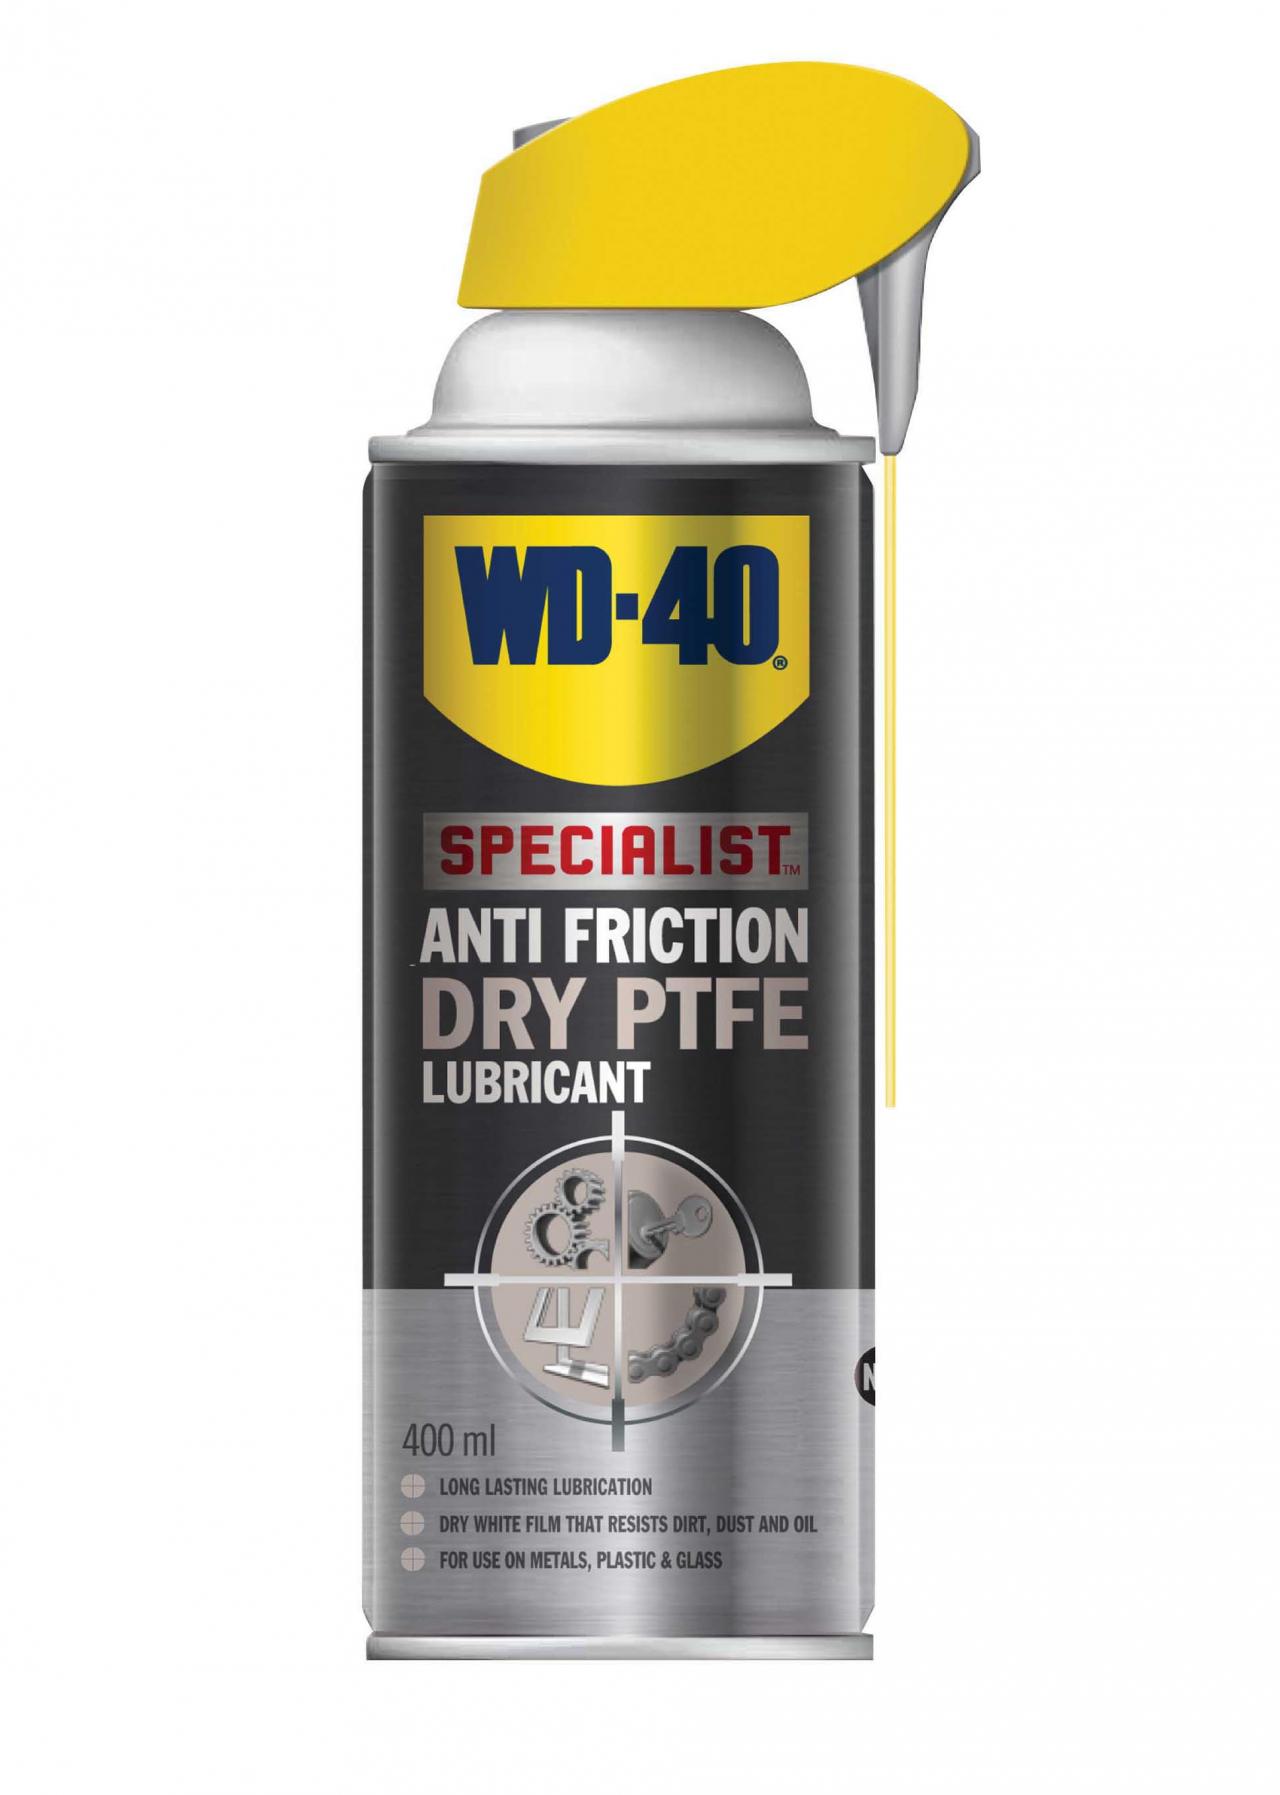 WD-40 Specialist PTFE Dry Lubricant Spray, 300 ml - 3DJake